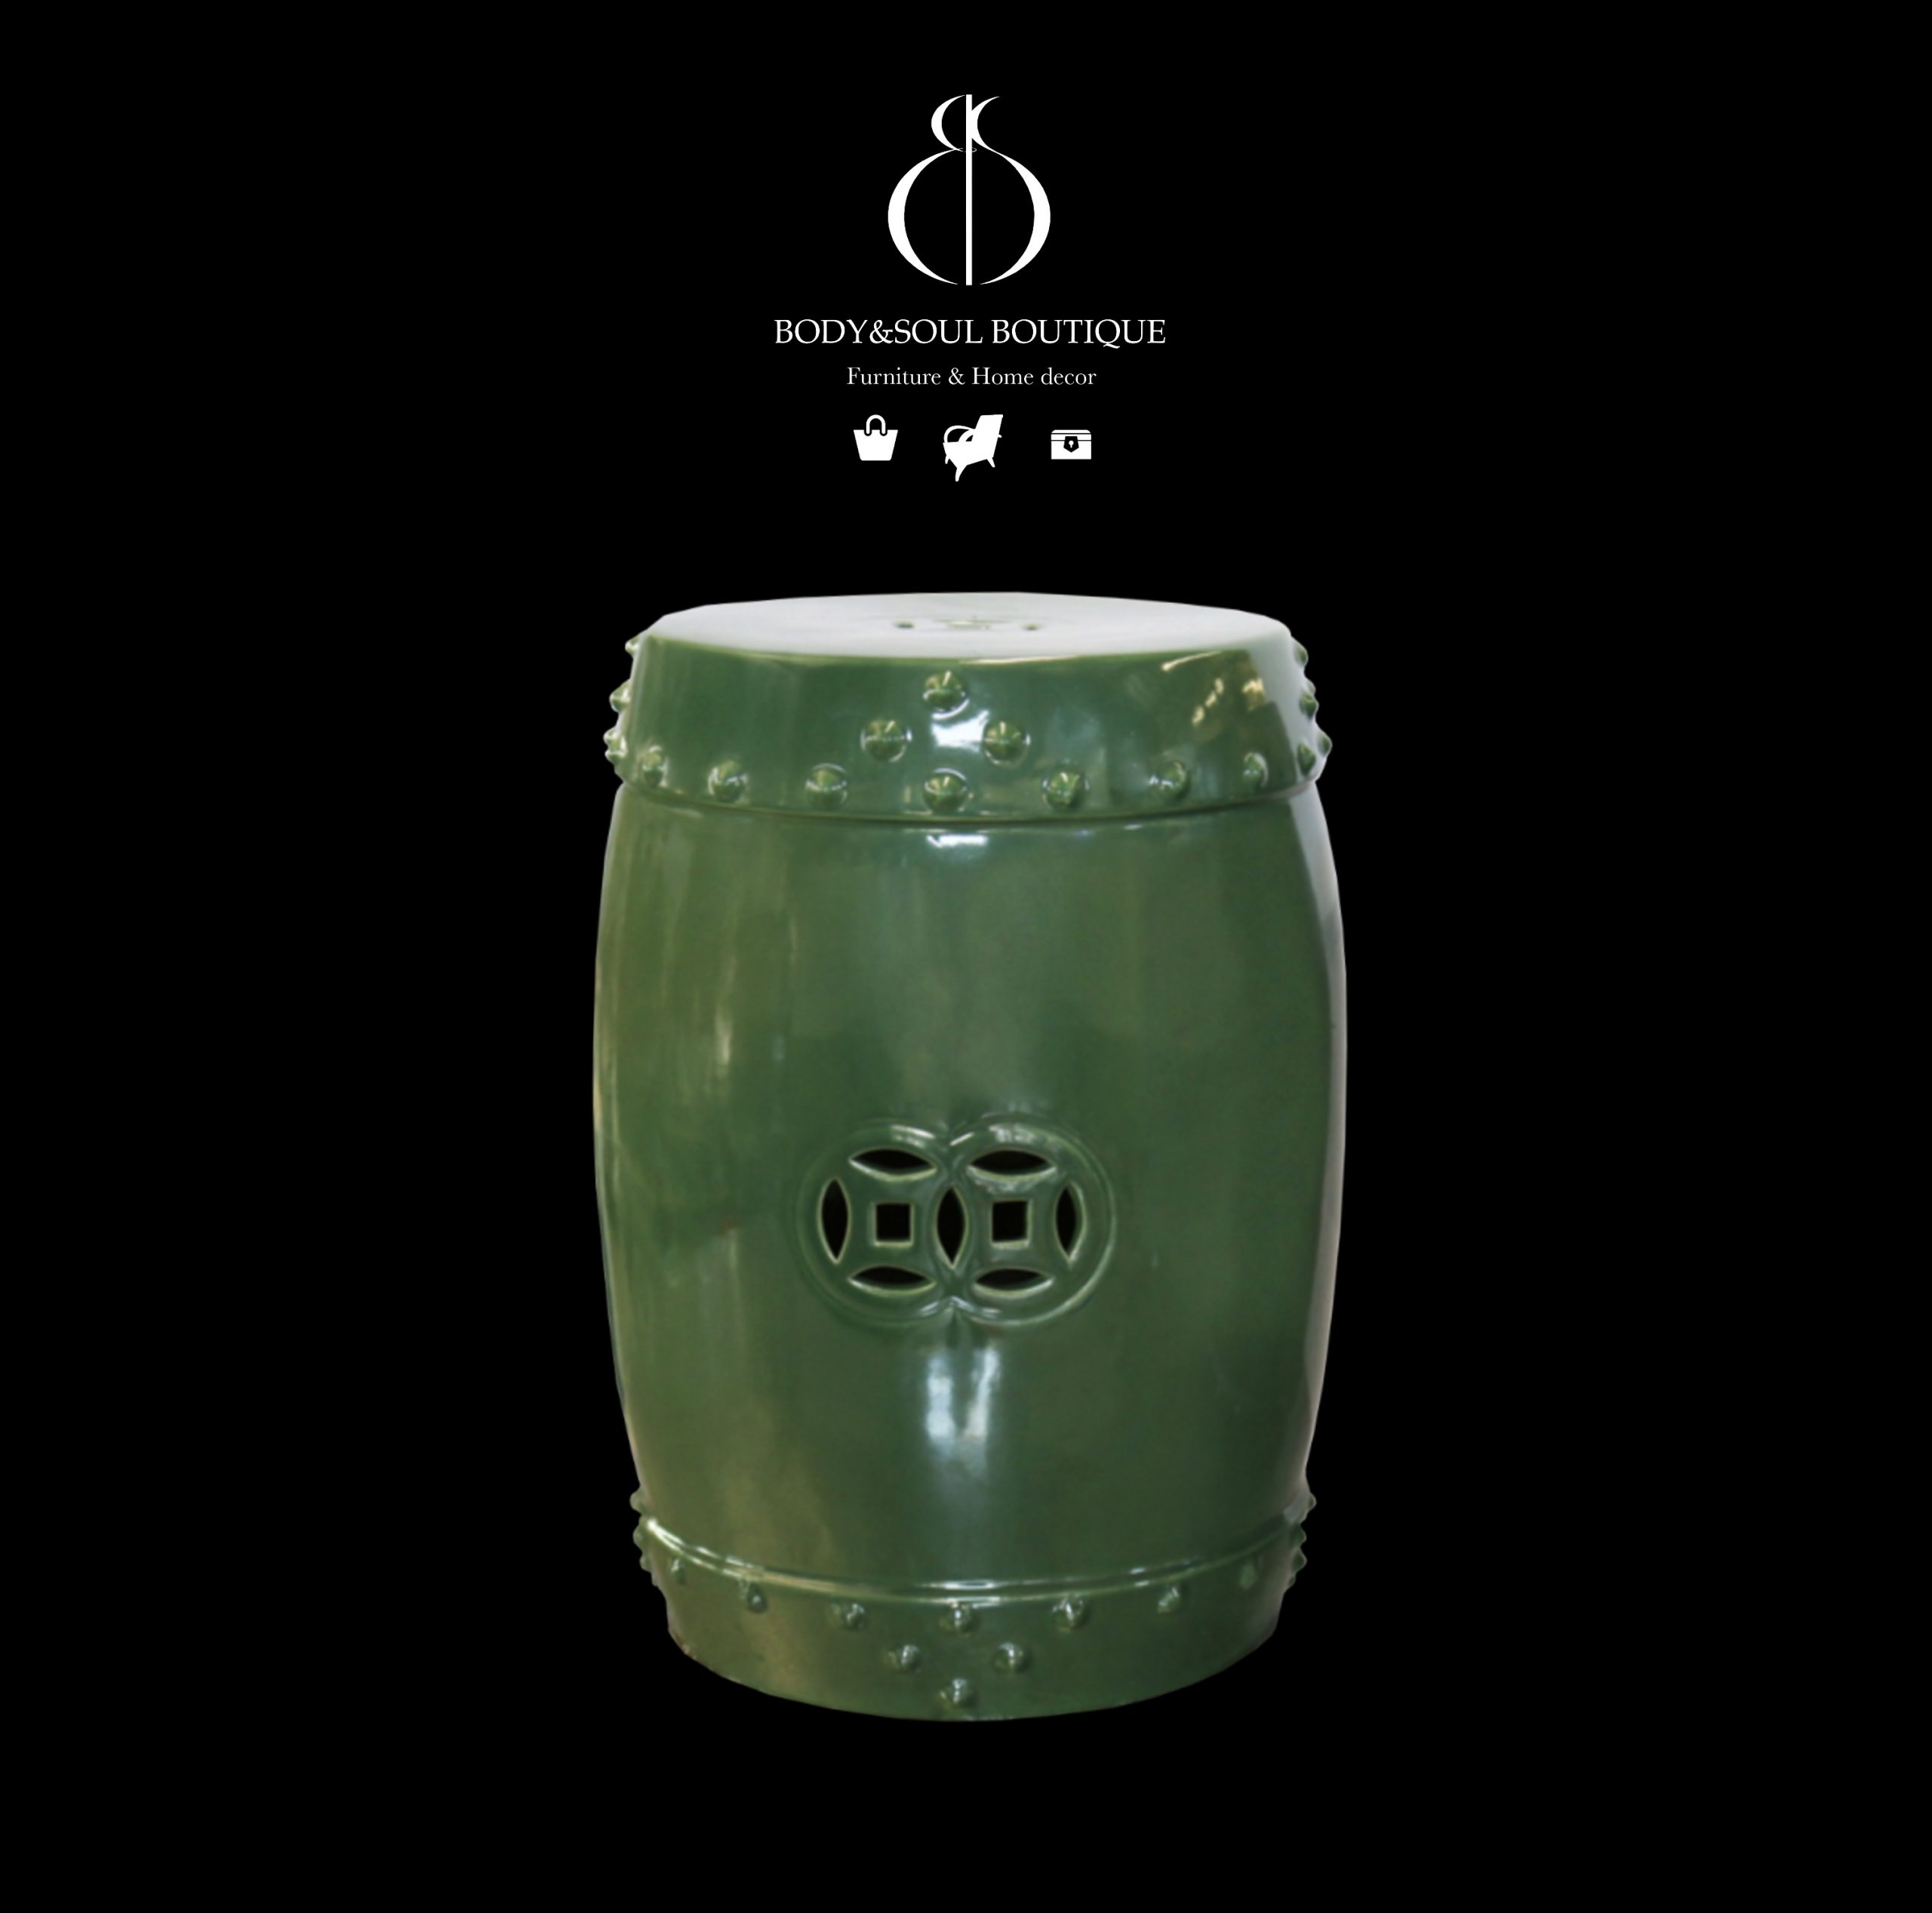 Drum-shaped Porcelain Pedestal (jade green)